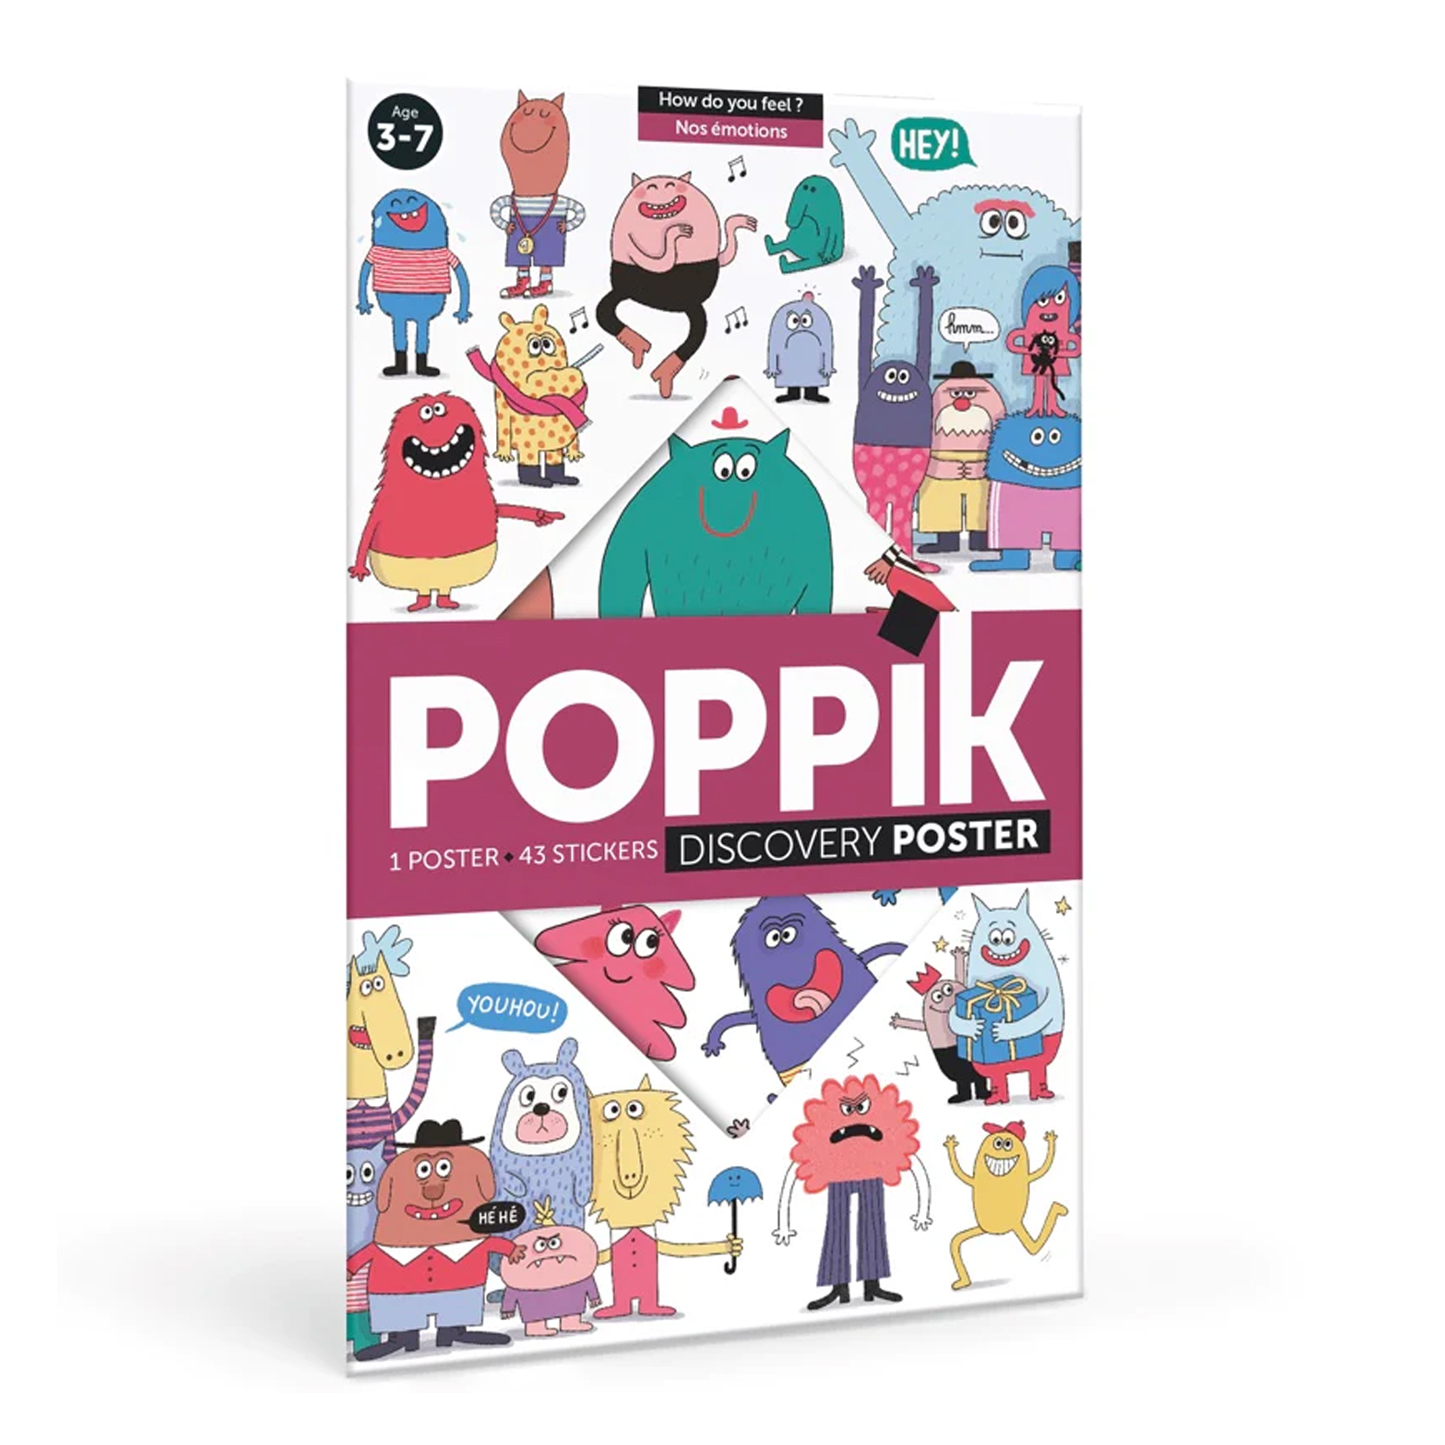 POPPIK Poppik Discovery Sticker Poster - Feelings